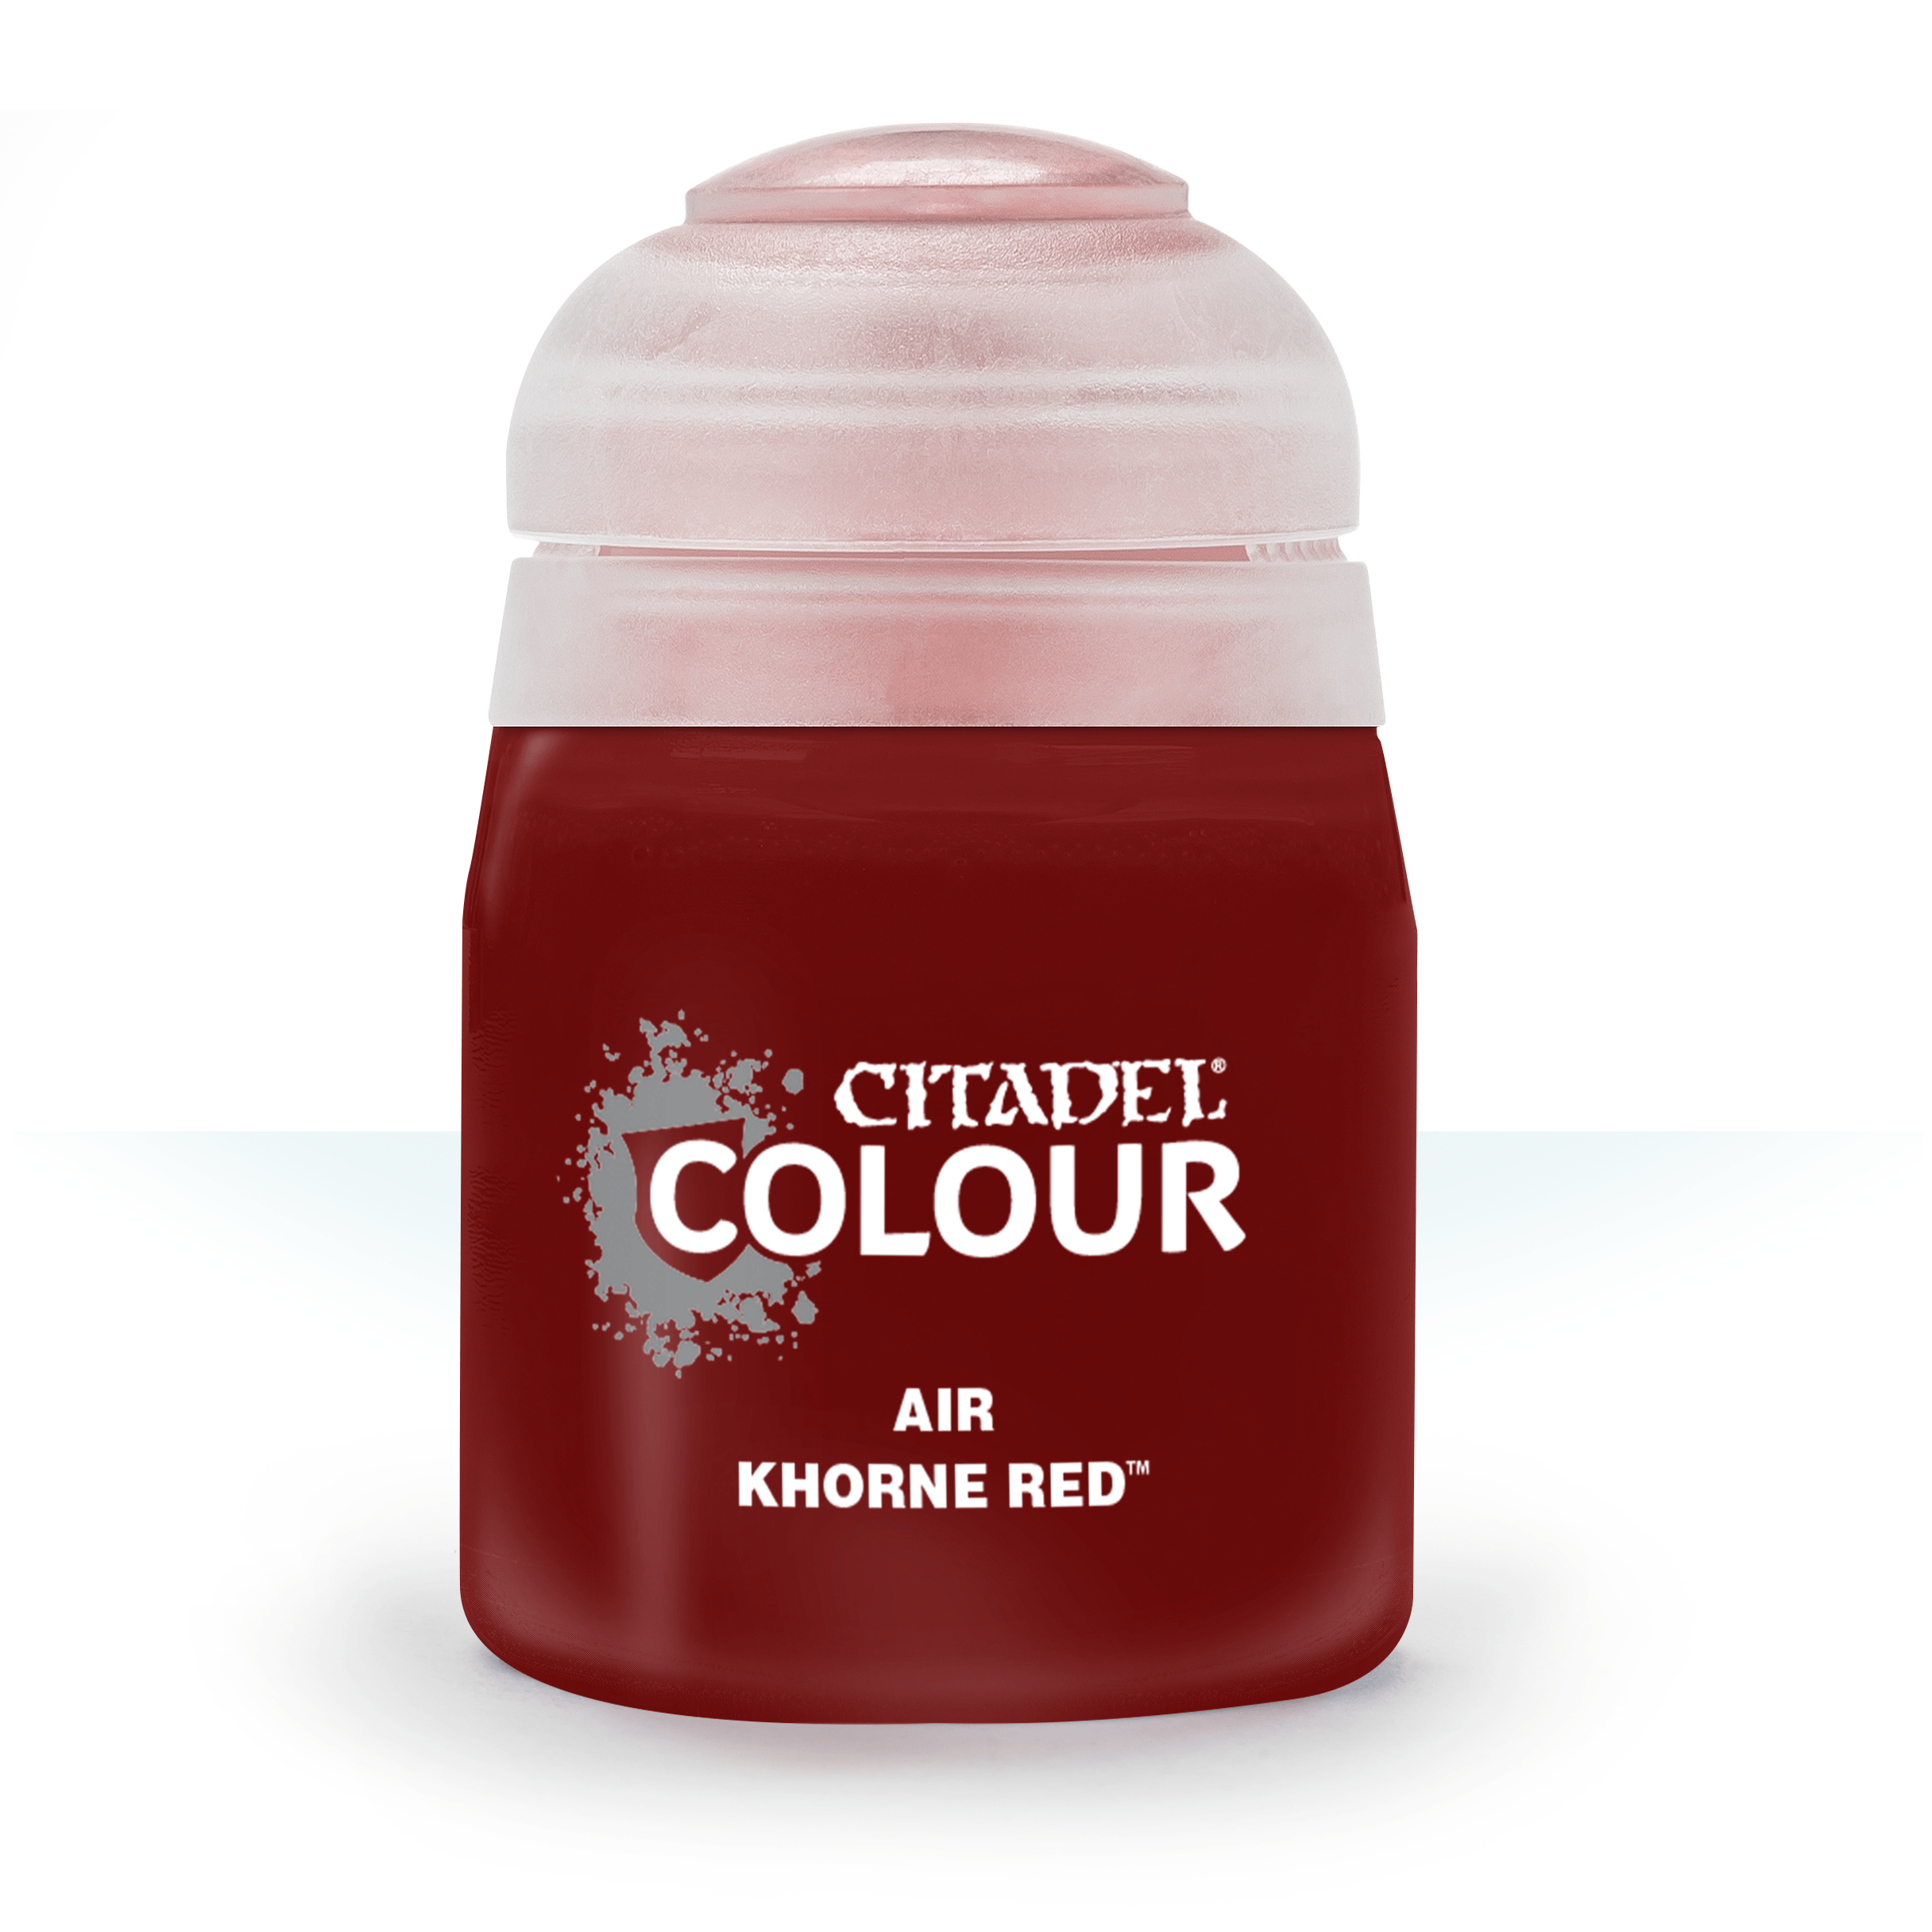 Air Khorne Red - Citadel Colour - 24 ml